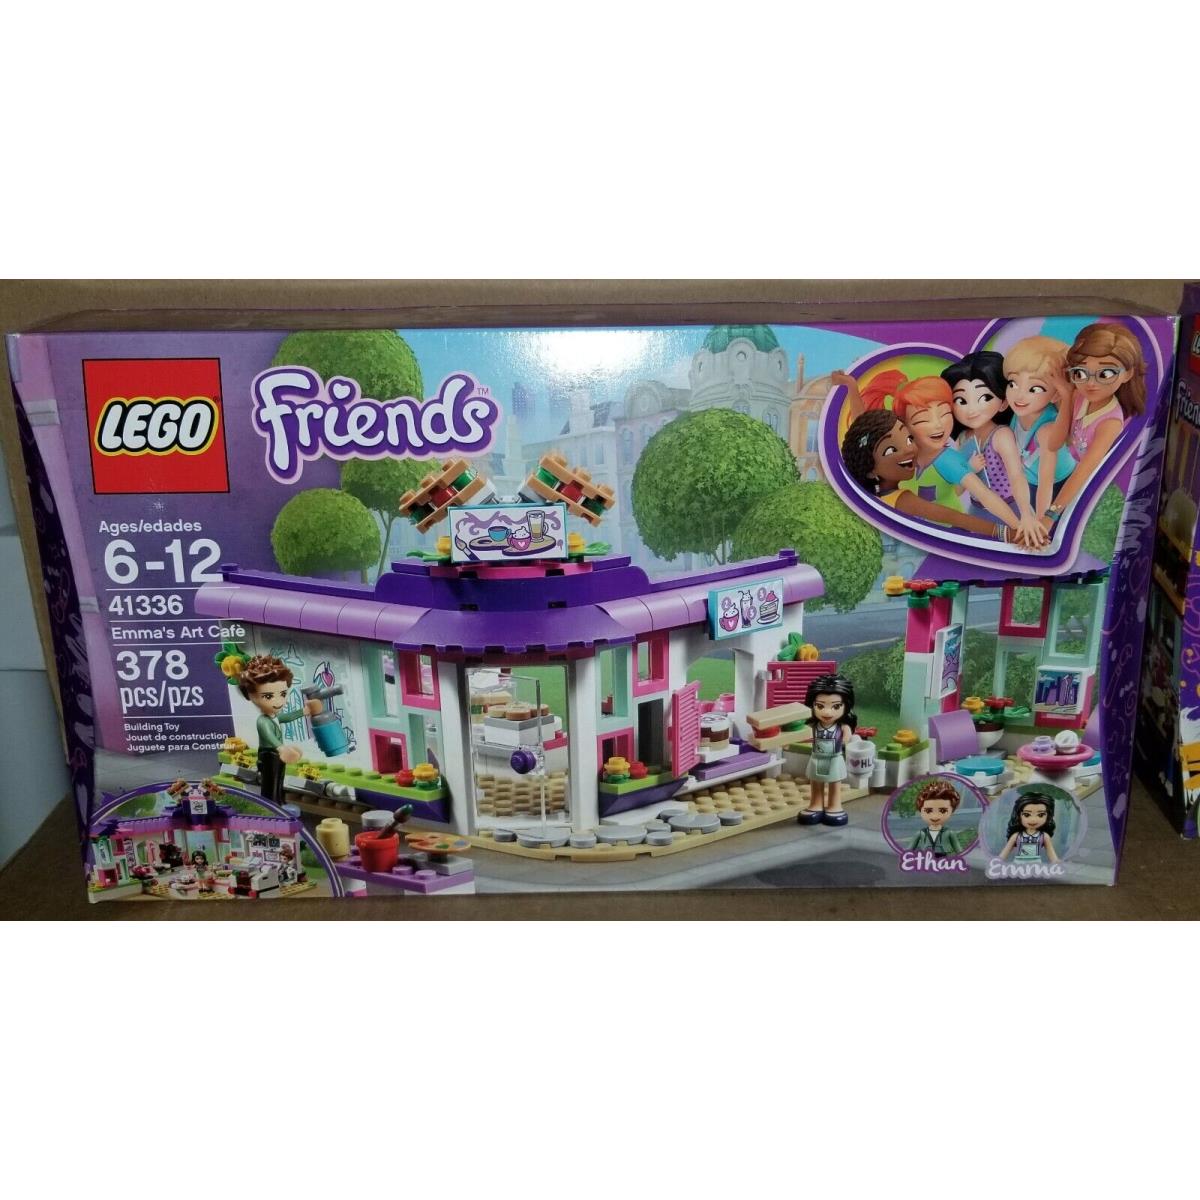 Lego Friends Emma S Art Caf 41336